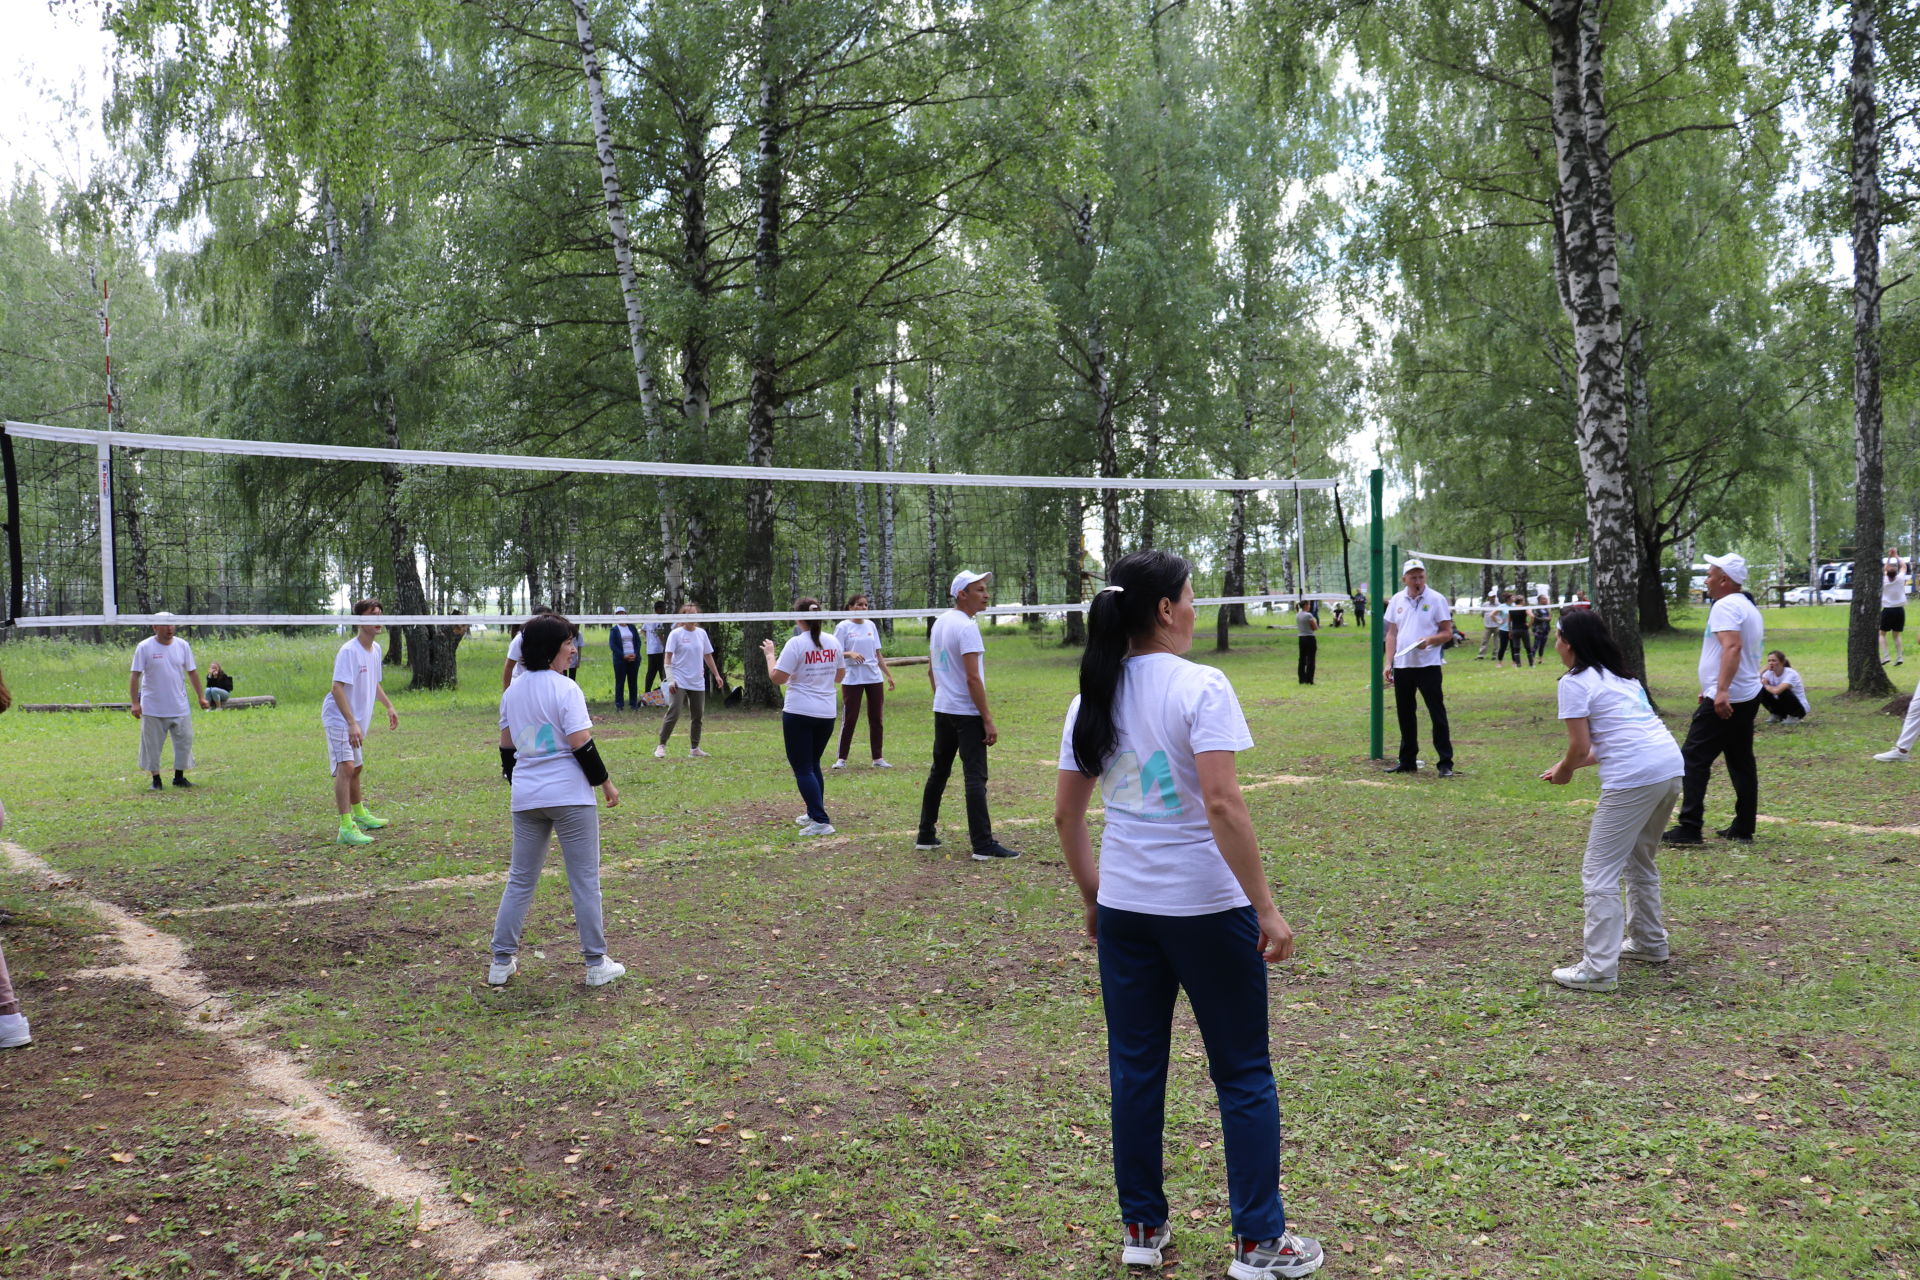 Сегодня в Сабинском районе состоялся Сабантуй, посвященный 15-летию агентства "Татмедиа"